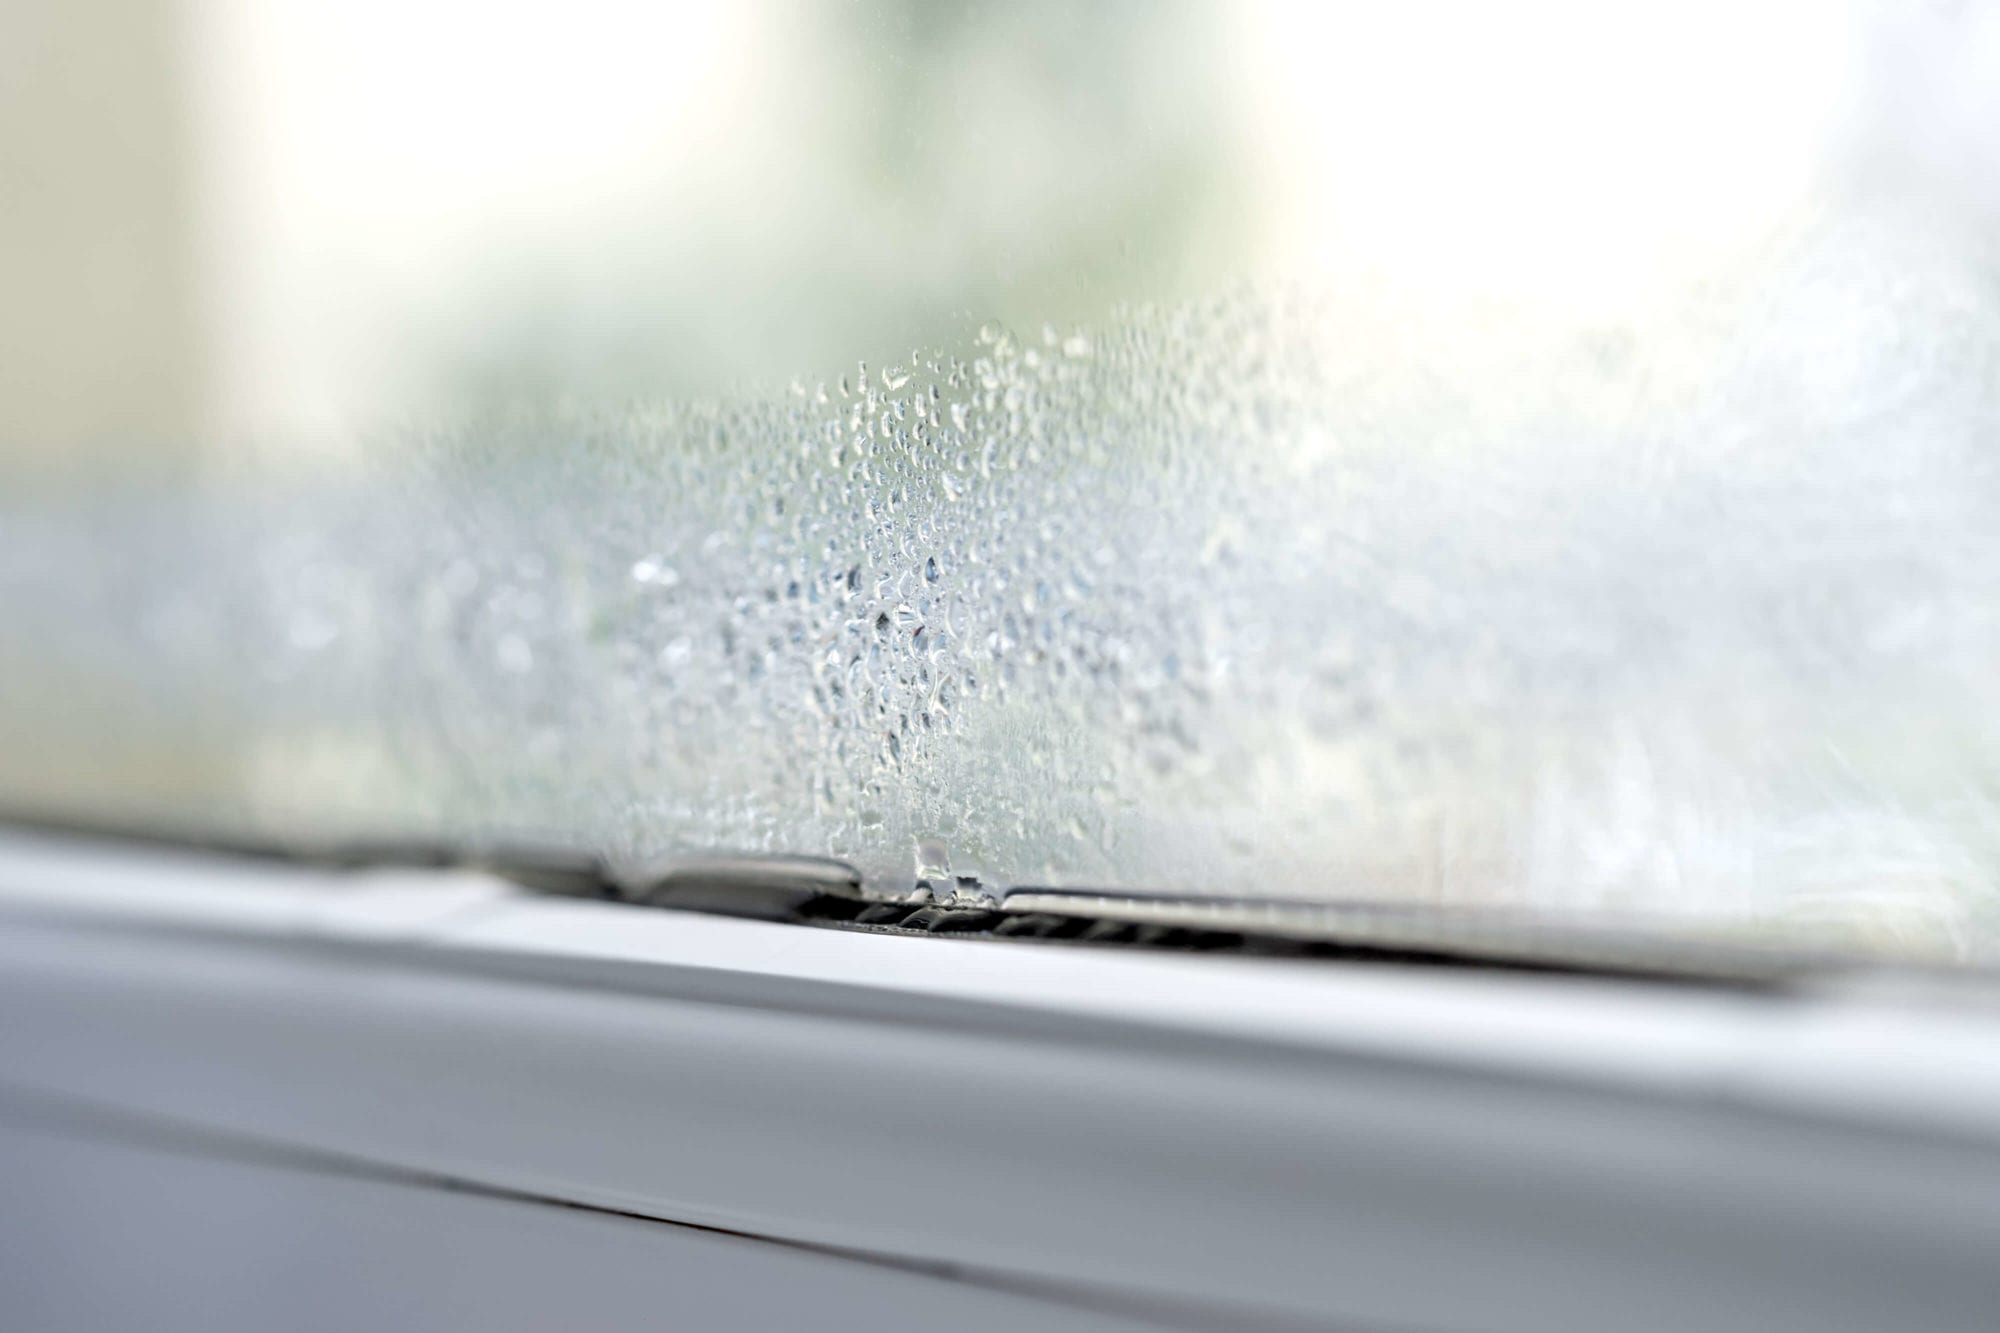 How to Prevent Condensation on Aluminium Windows